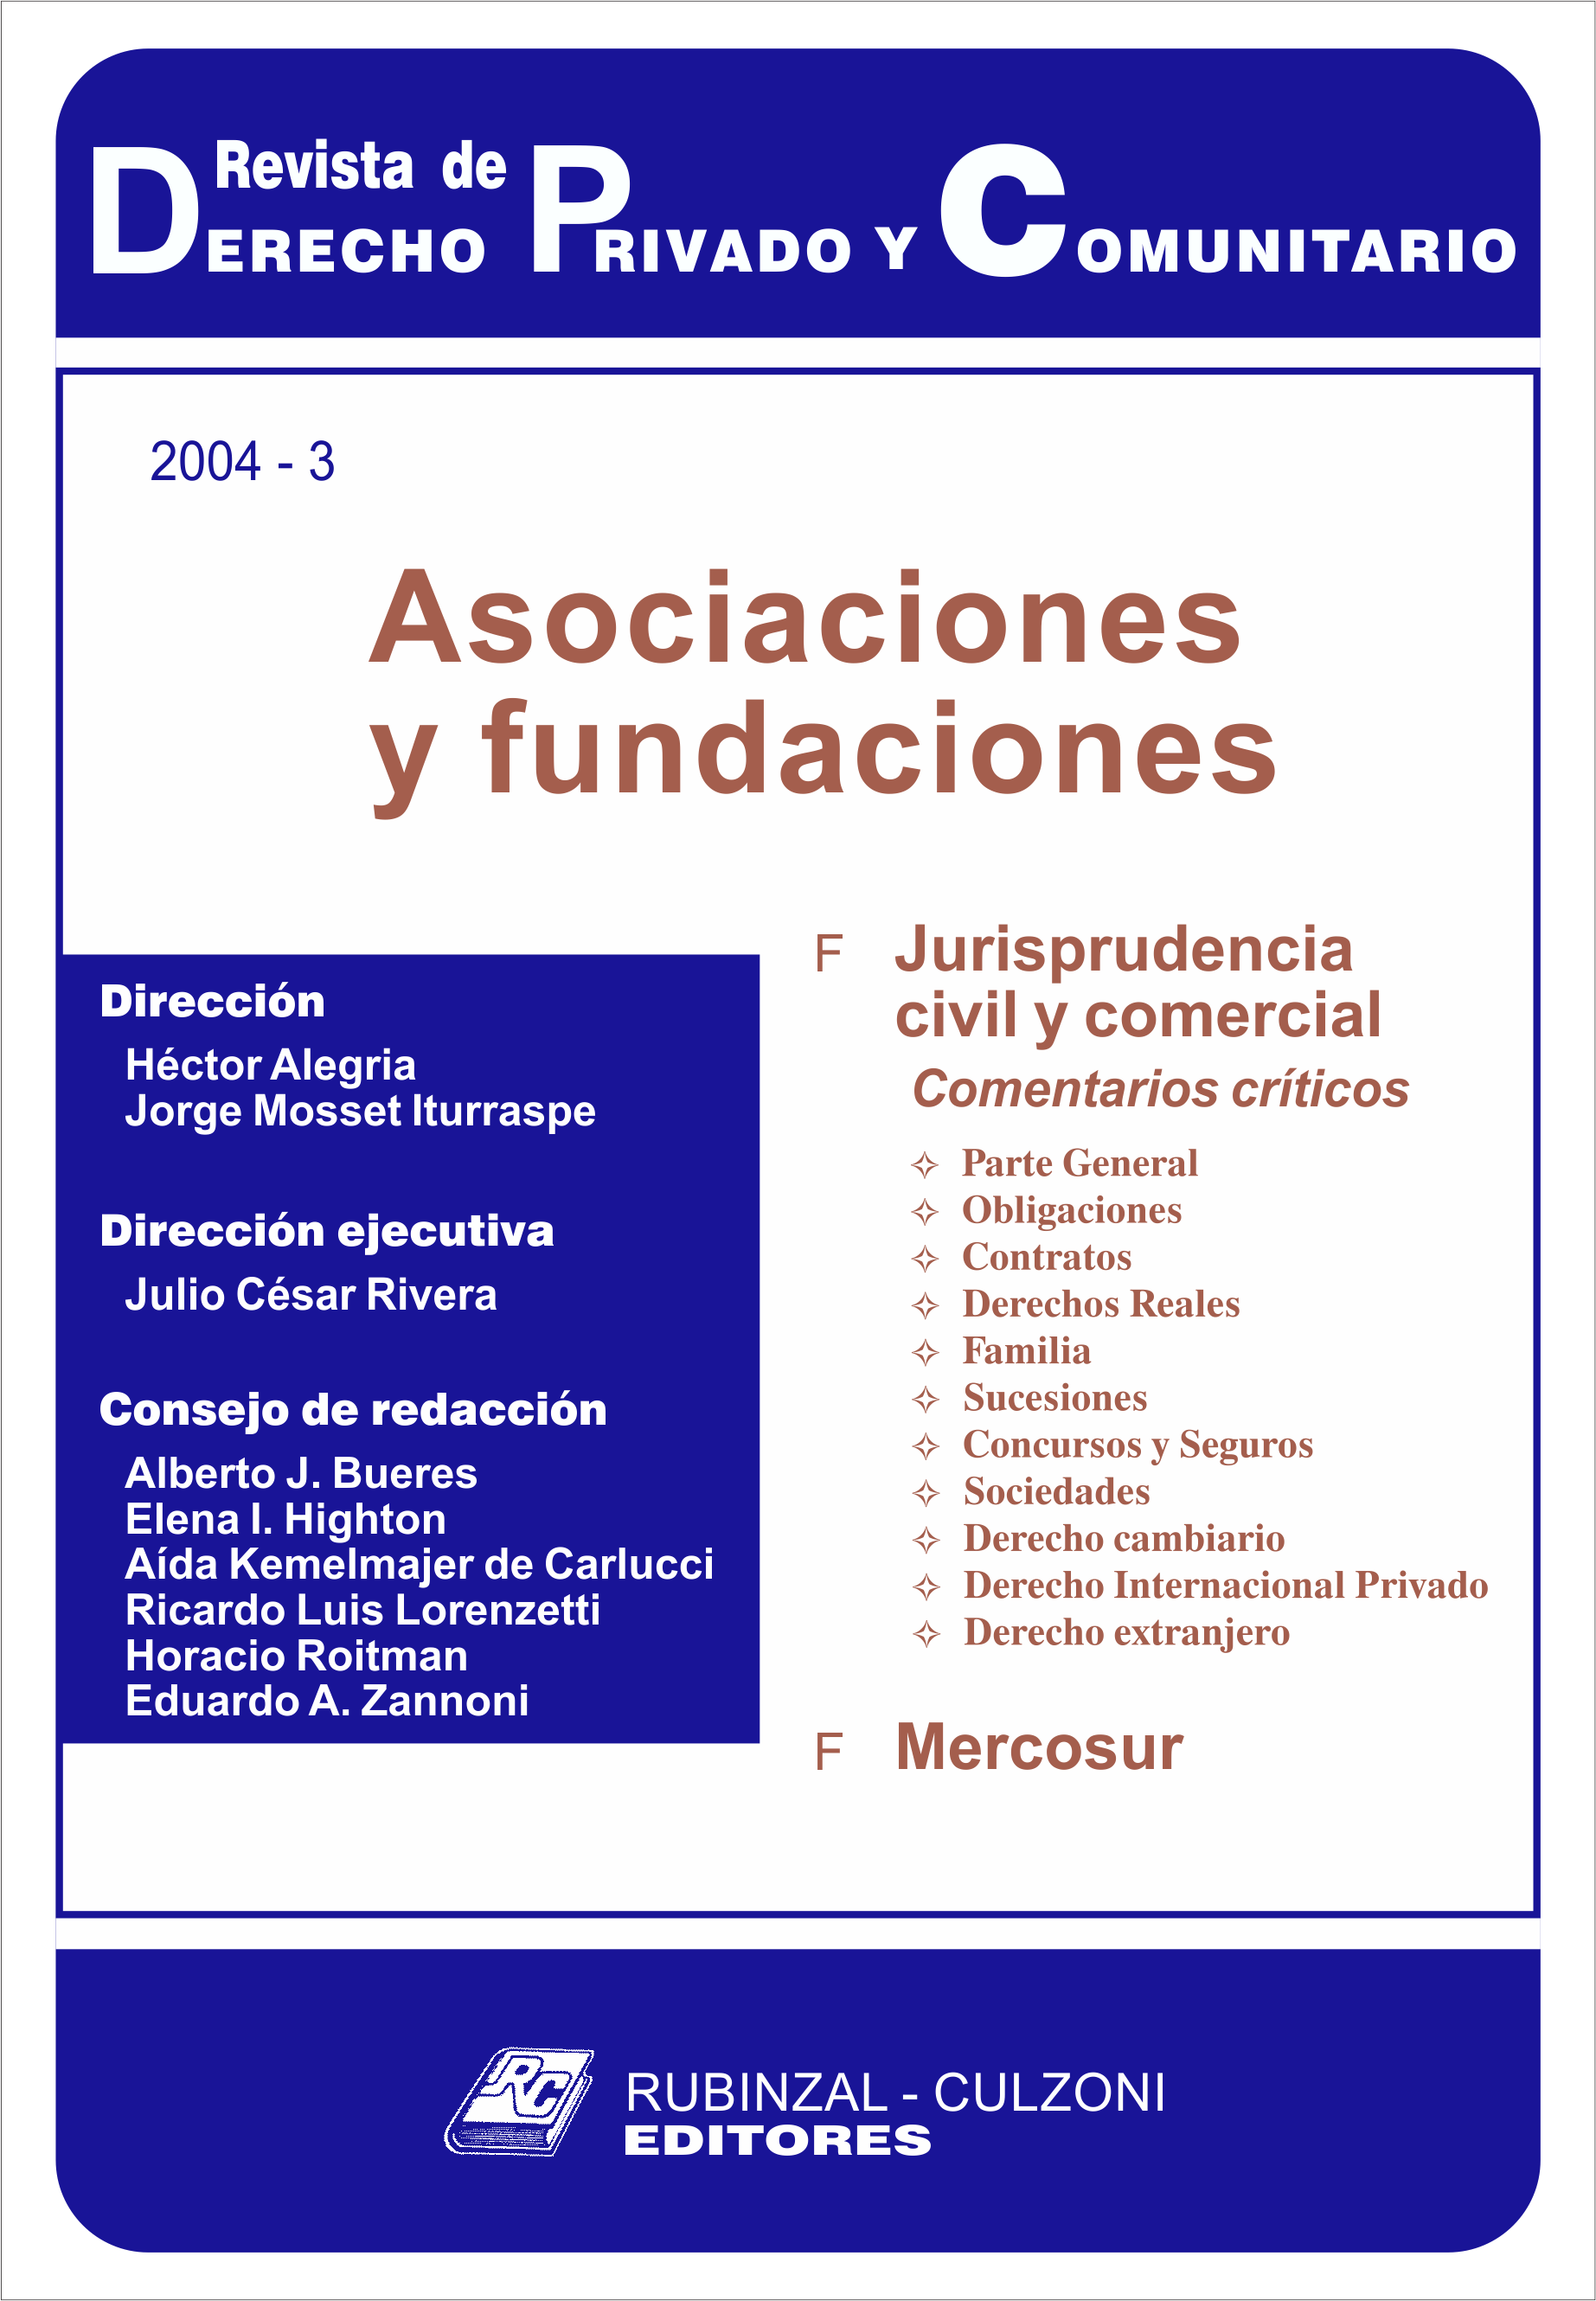 Revista de Derecho Privado y Comunitario - Asociaciones y fundaciones